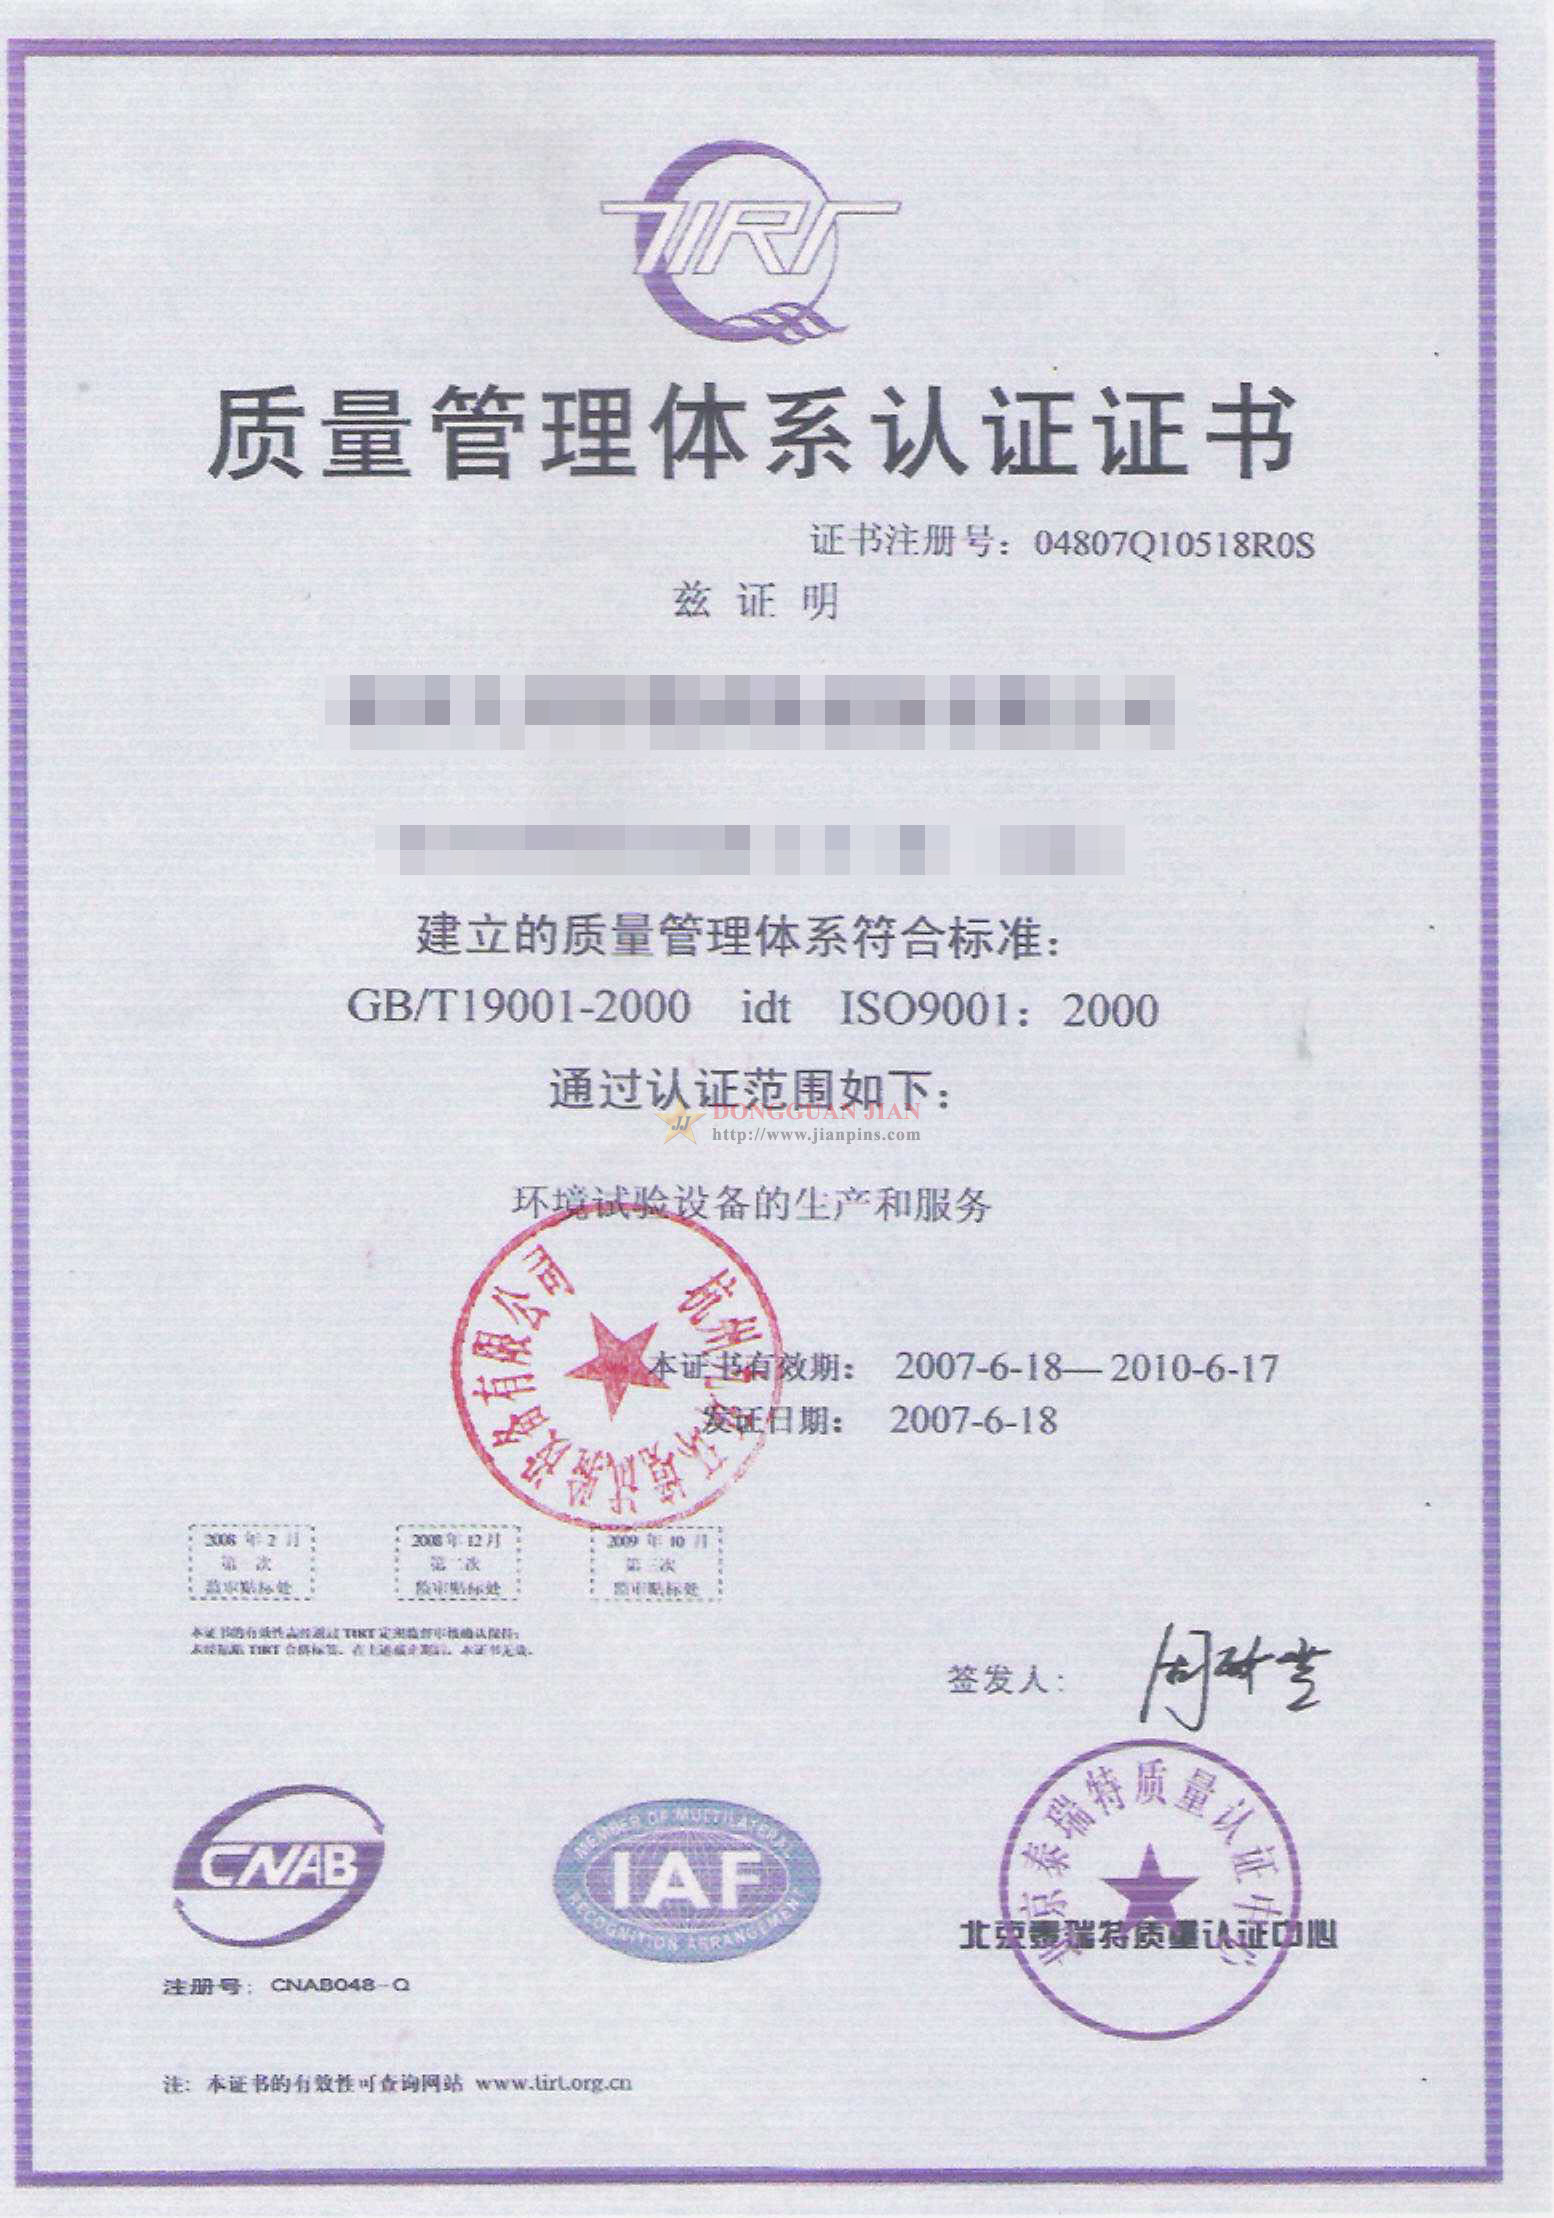 Certificaten5